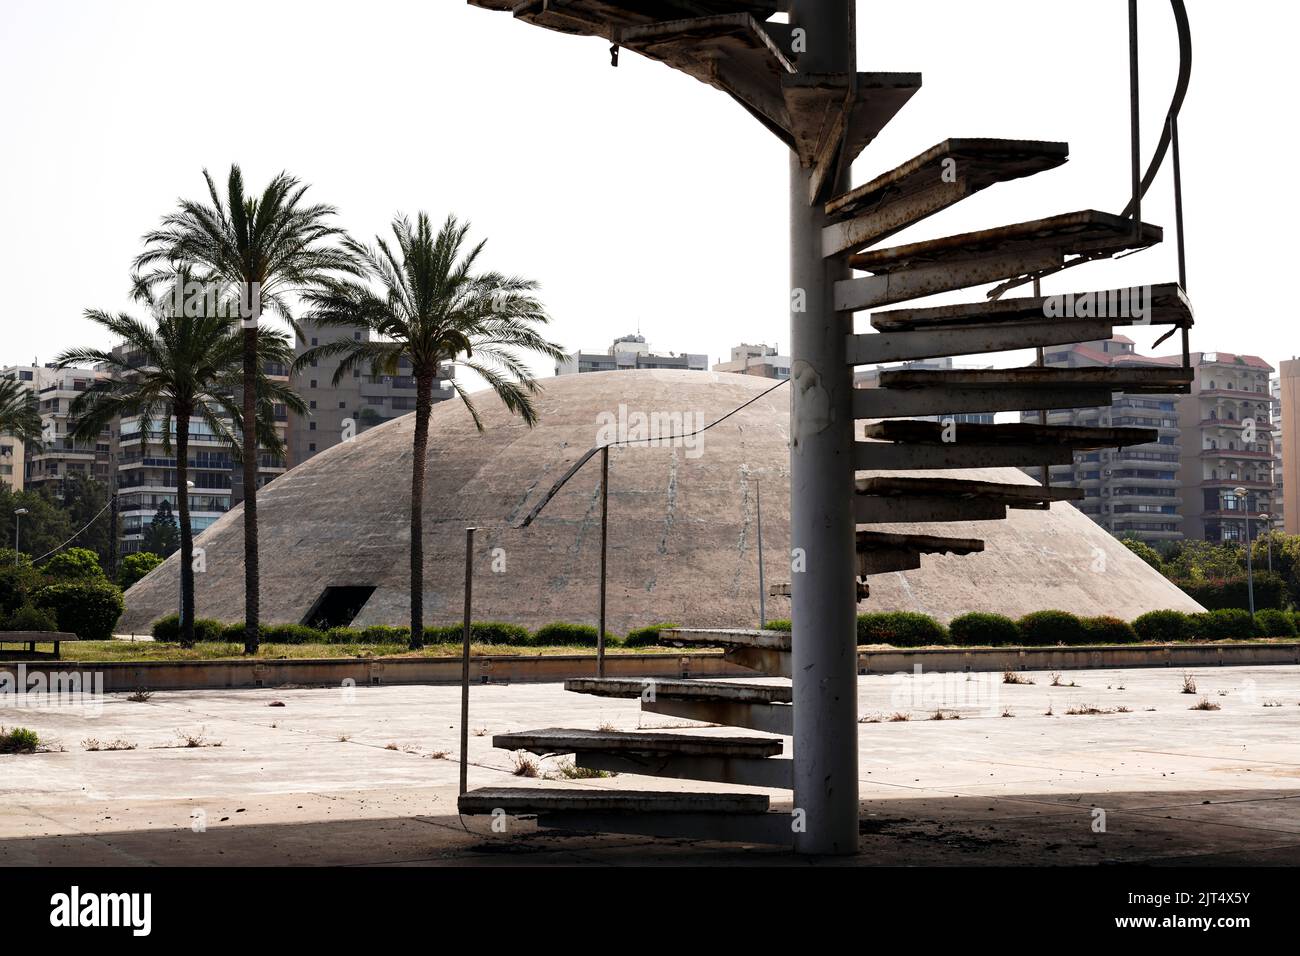 L'architetto Oscar Niemeyer ha progettato gli edifici per il centro fieristico internazionale Rashid Karami di Tripoli, ma i lavori di costruzione non sono mai stati completati a causa dello scoppio della guerra civile. Tripoli, Libano Foto Stock